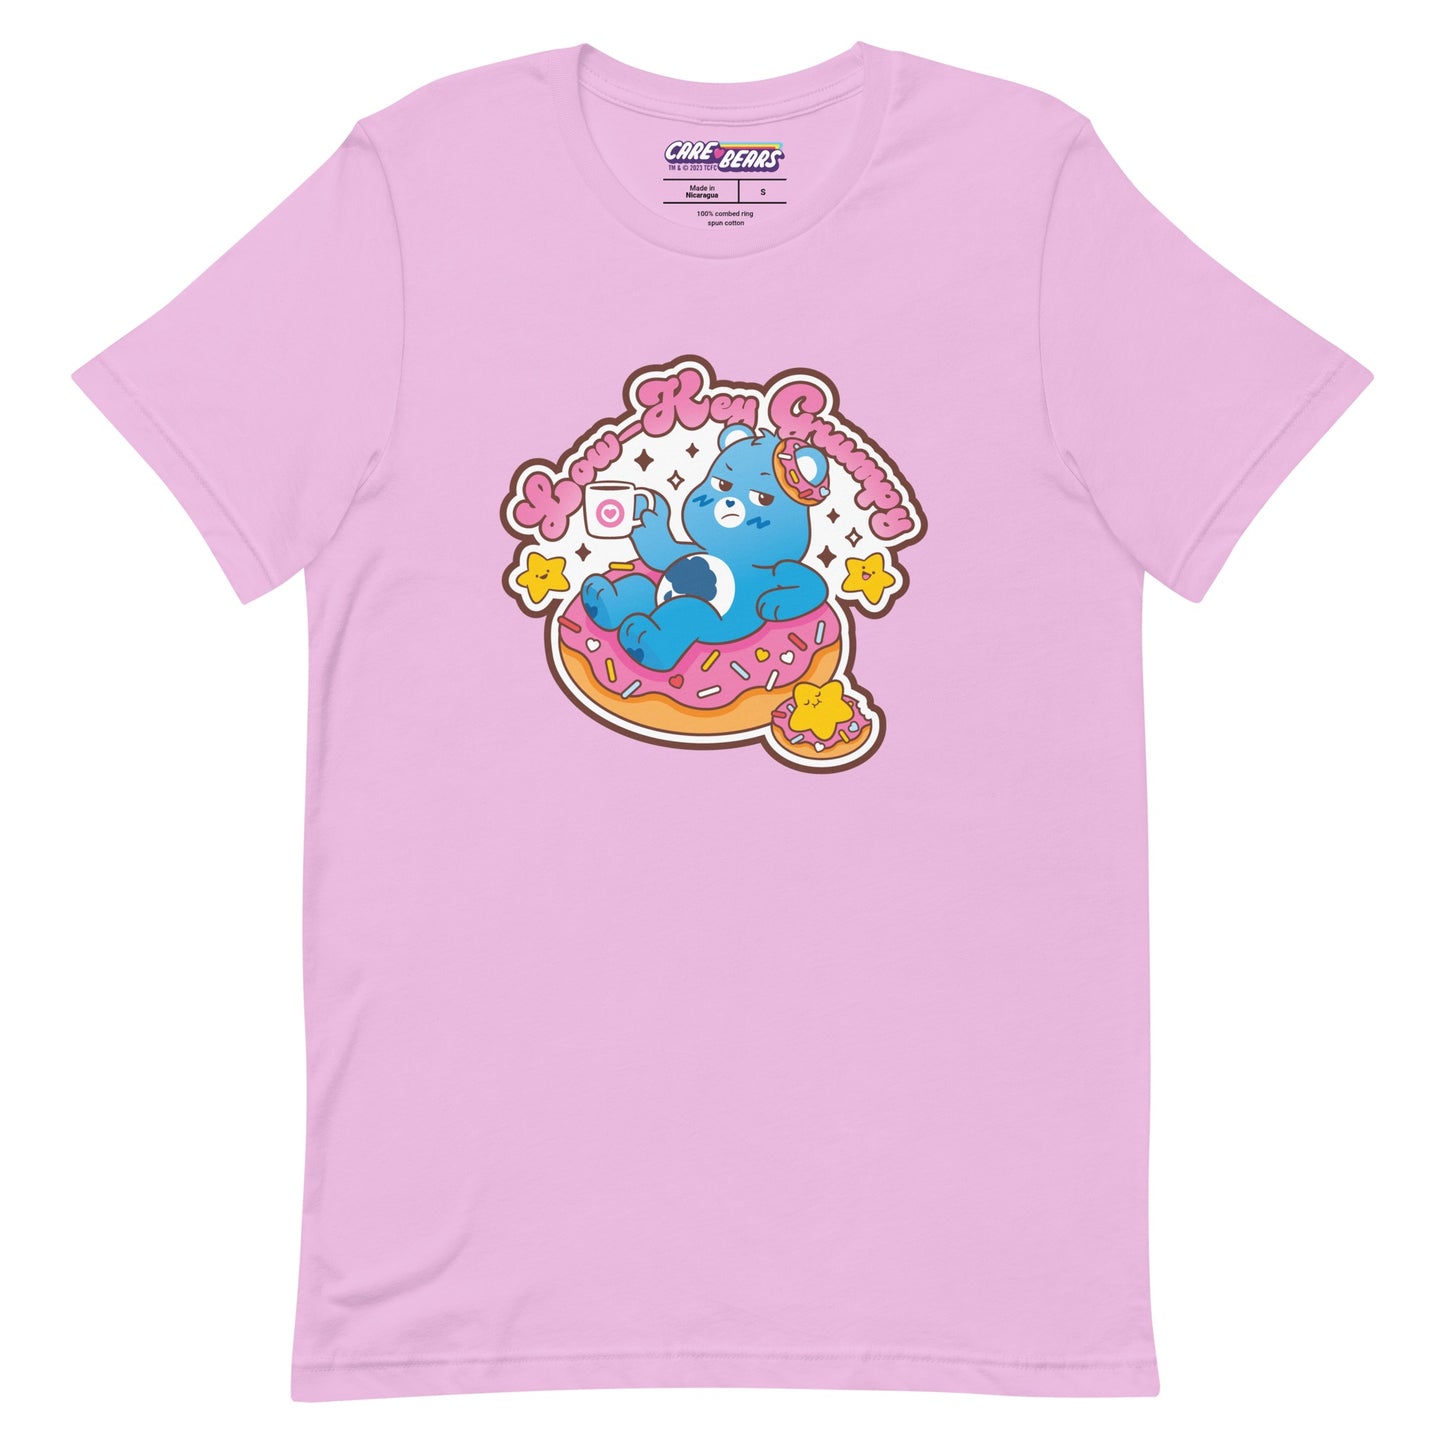 Care Bears Grumpy Bear™ Low-Key Grumpy T-Shirt